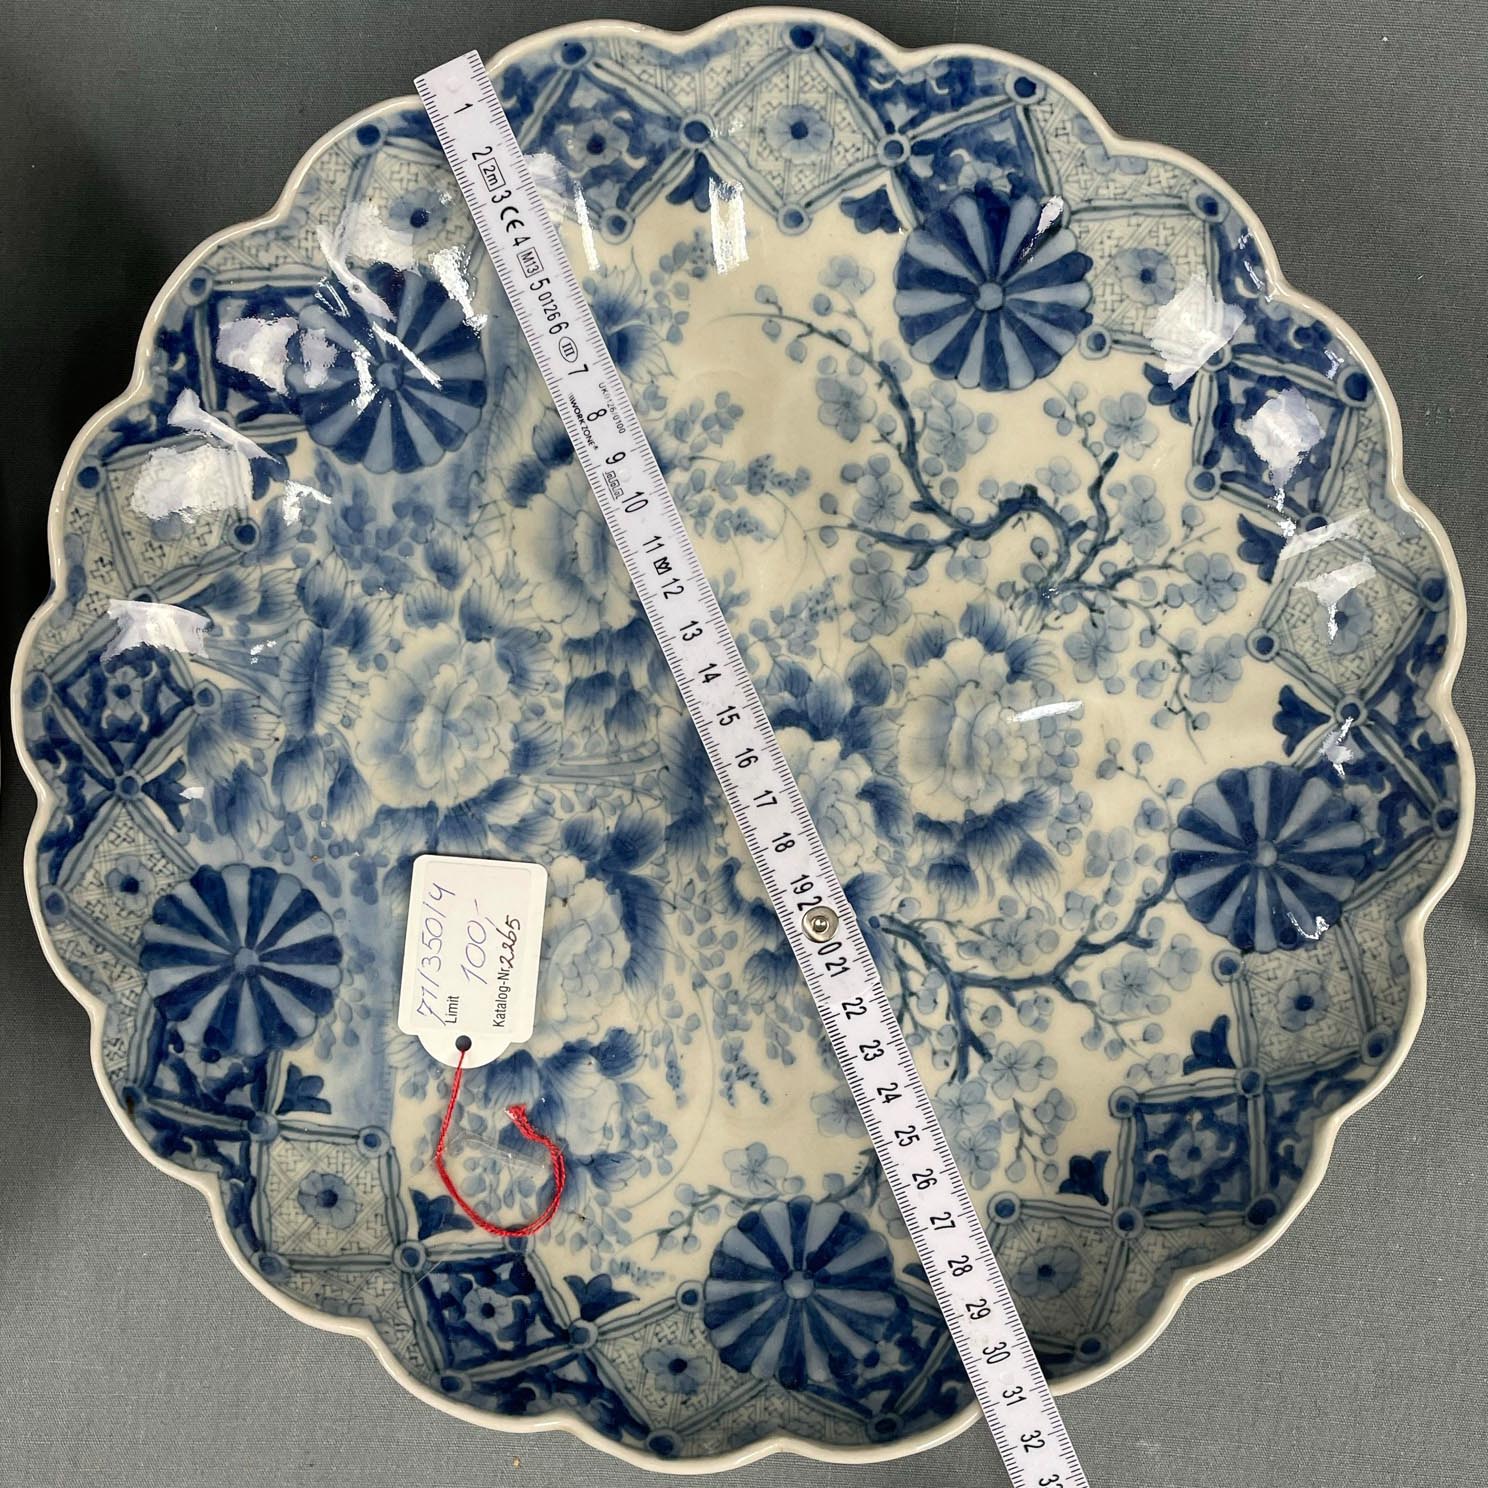 2 Platten Porzellan. Wohl China antik. - Image 16 of 16